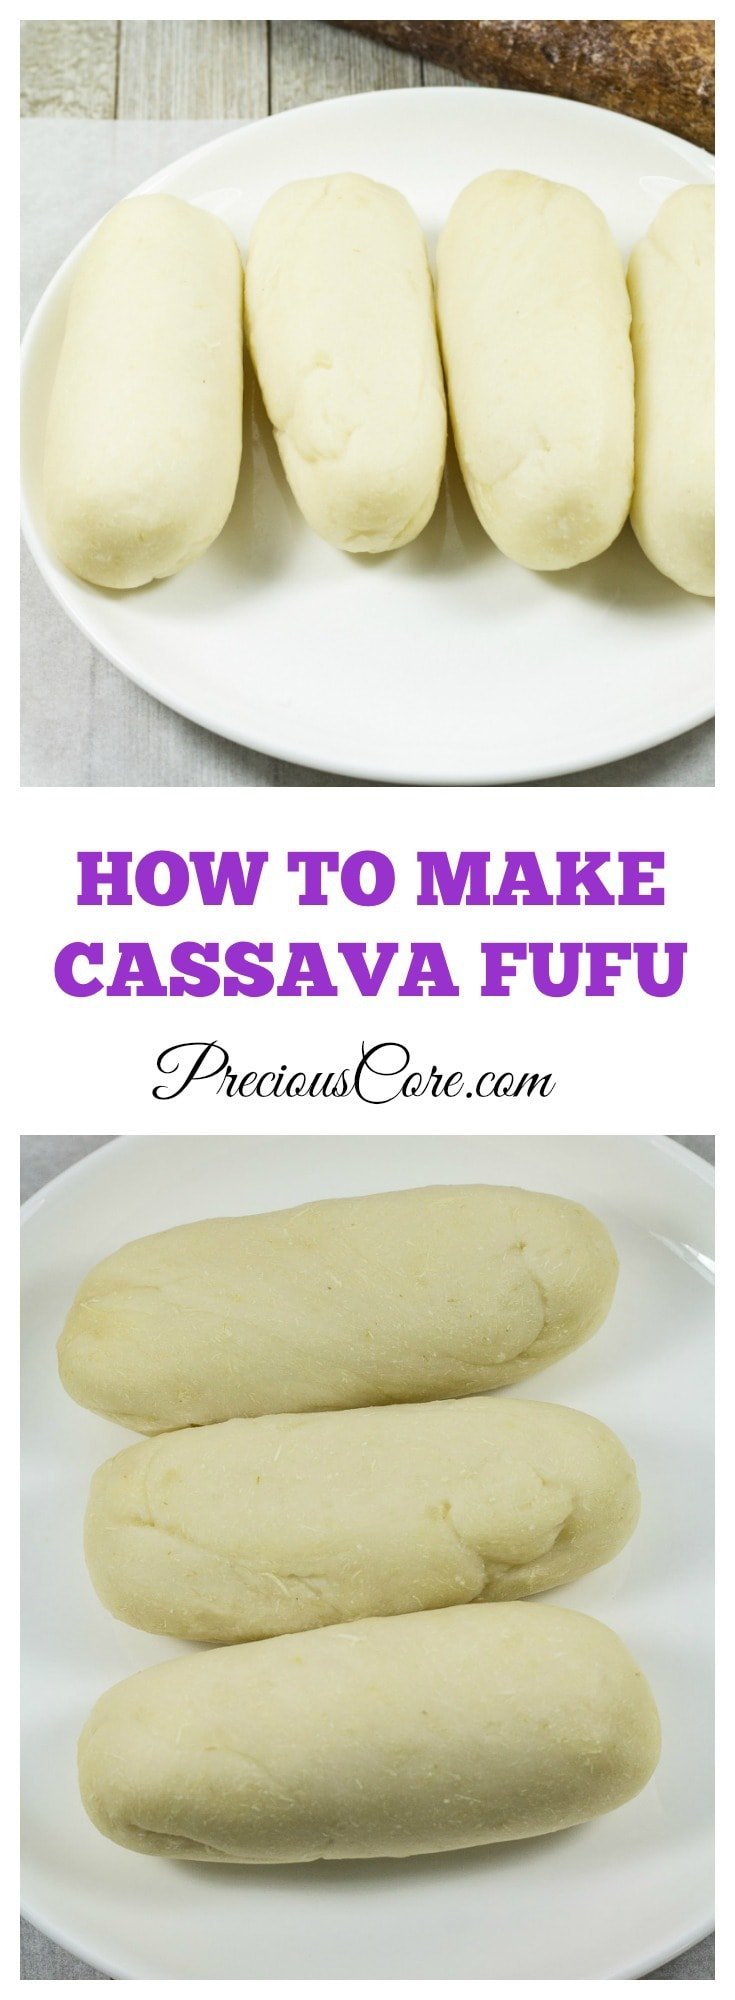 Cassava Fufu - Water Fufu from scratch